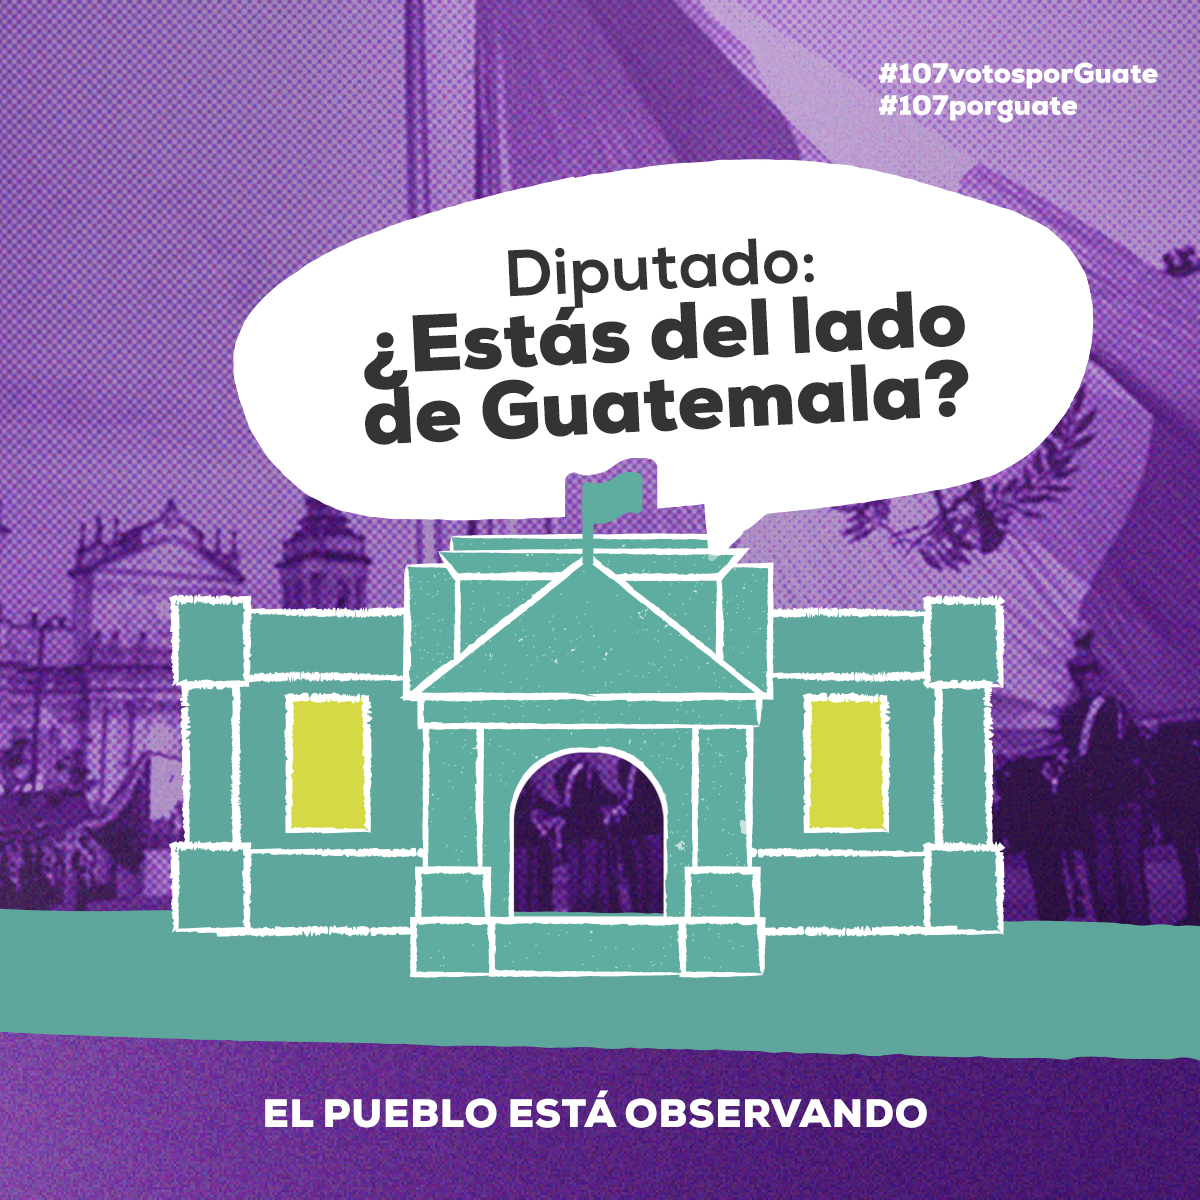 #107votosporguate 🇬🇹🇬🇹🇬🇹 El pueblo está observando nuestro actuar desde Congreso. Diputados: ¿a favor de quién están? #ministeriopublico #bancadasemilla